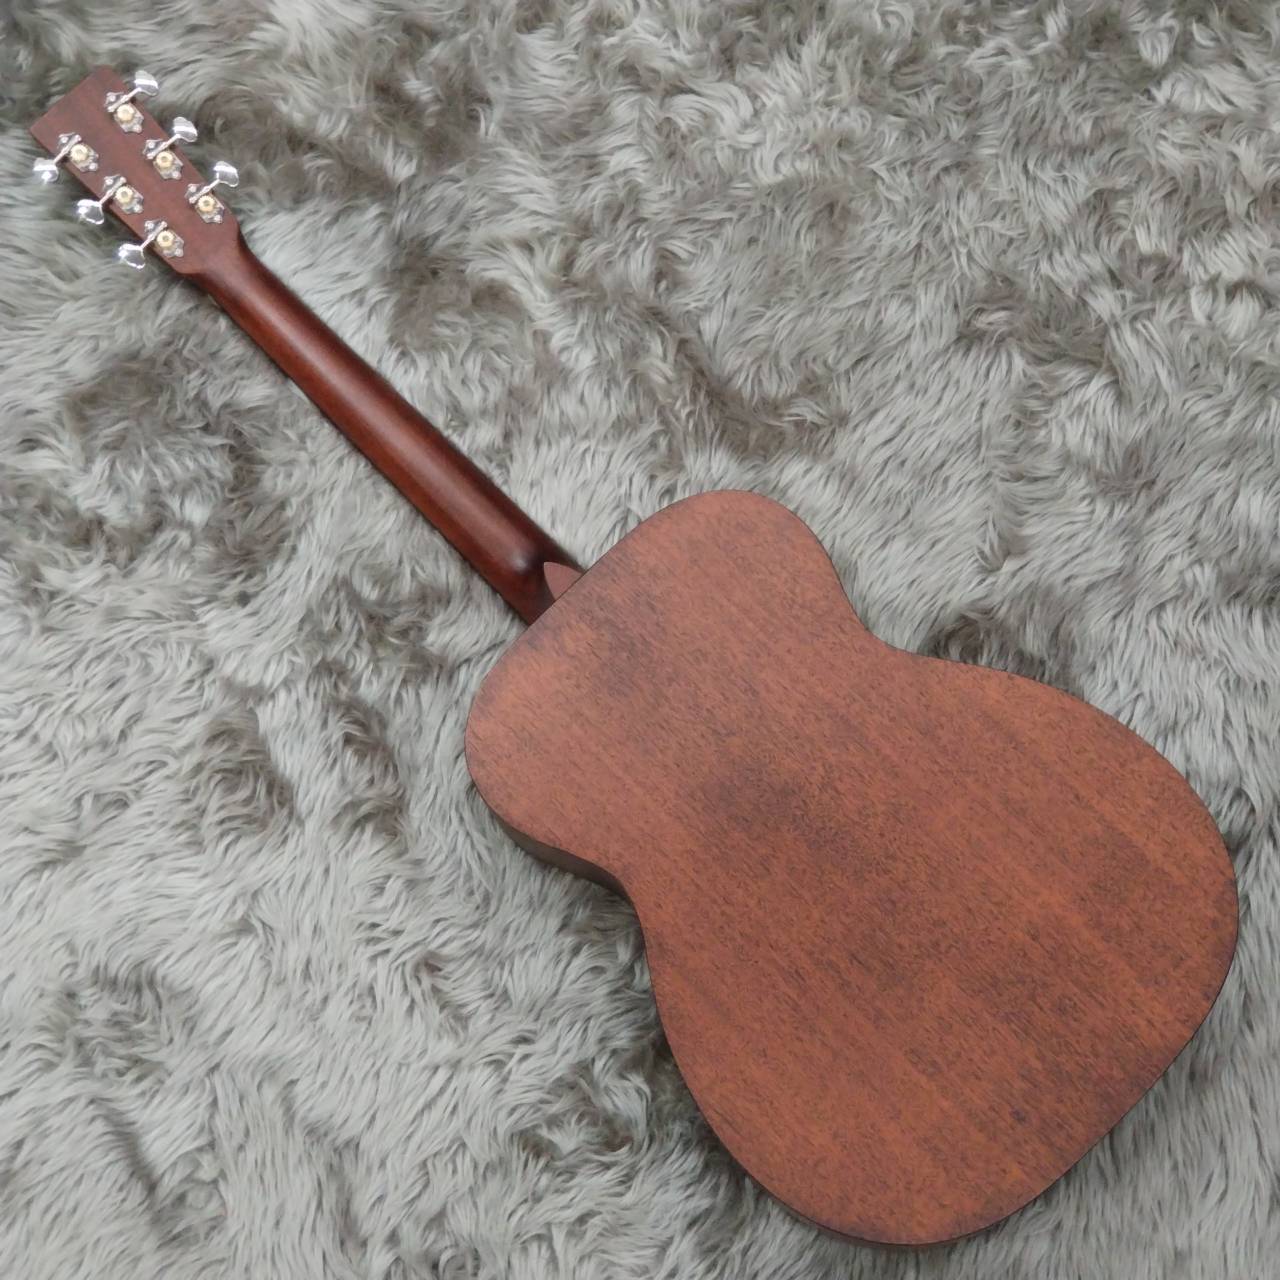 Martin 00-15M アコースティックギター【フォークギター】 【15 Series